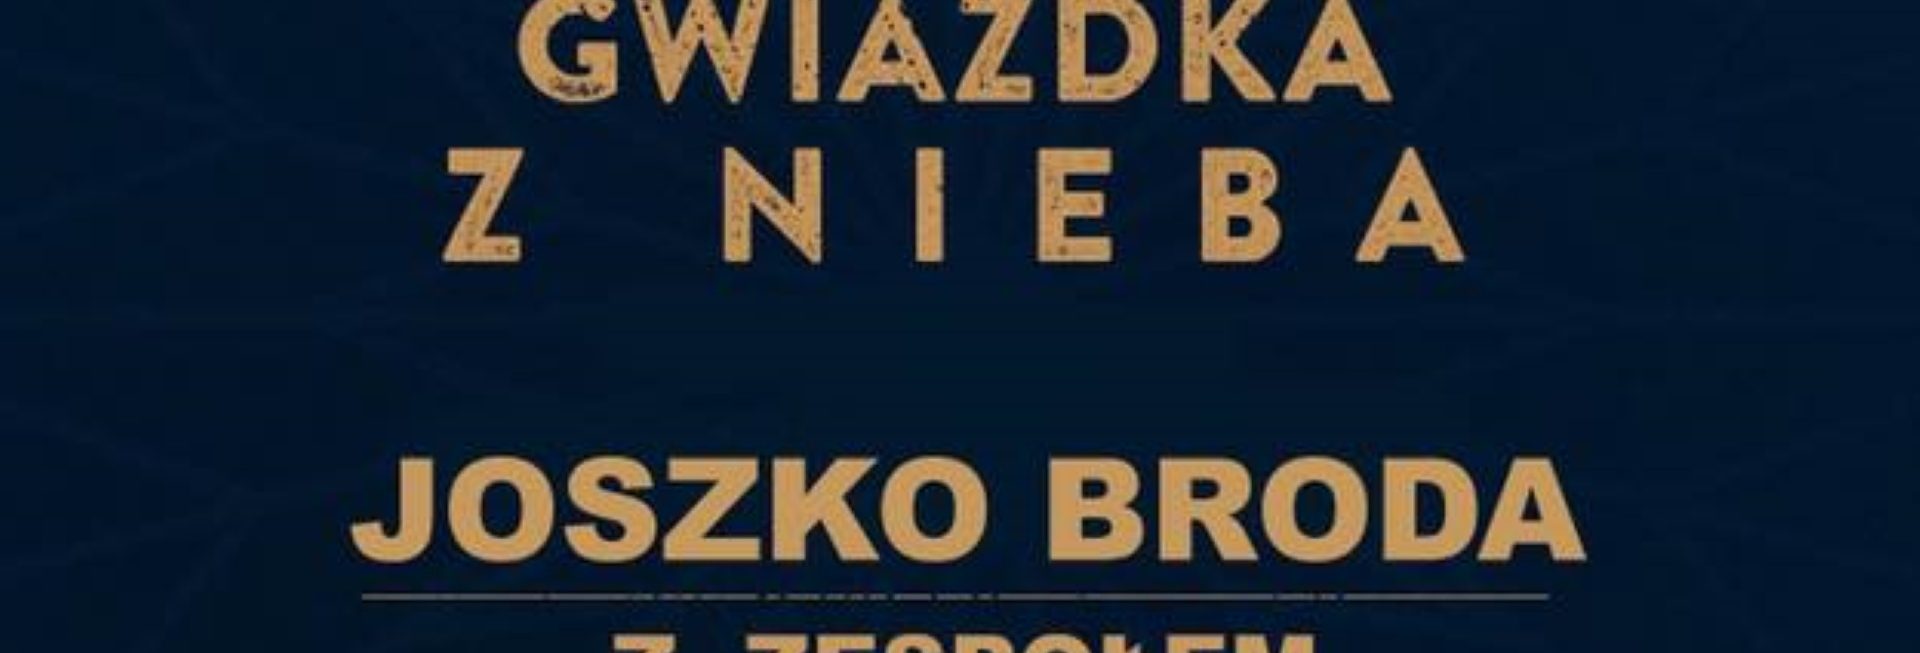 Plakat graficzny zapraszający do miejscowości Nowe Kawkowo na koncert Świąteczny Joszko Brody "Gwiazdka z Nieba" - Nowe Kawkowo 2021.  